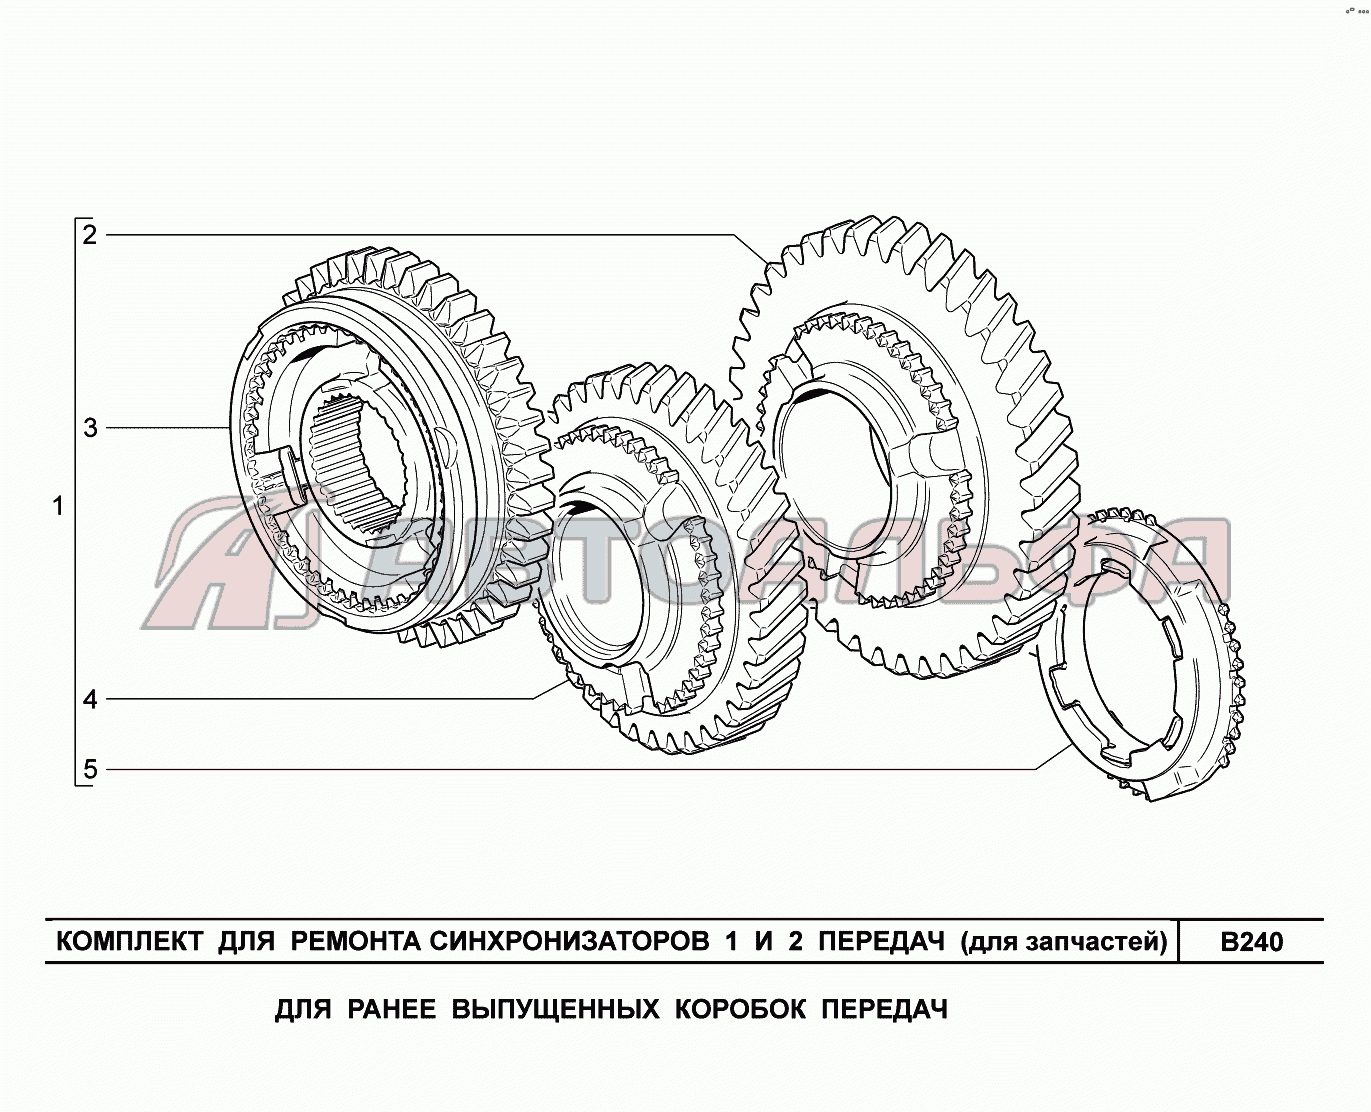 B240. Комплект для ремонта синхронизаторов (для запчастей) LADA Priora FL (ВАЗ 2170), каталог 2013 г.